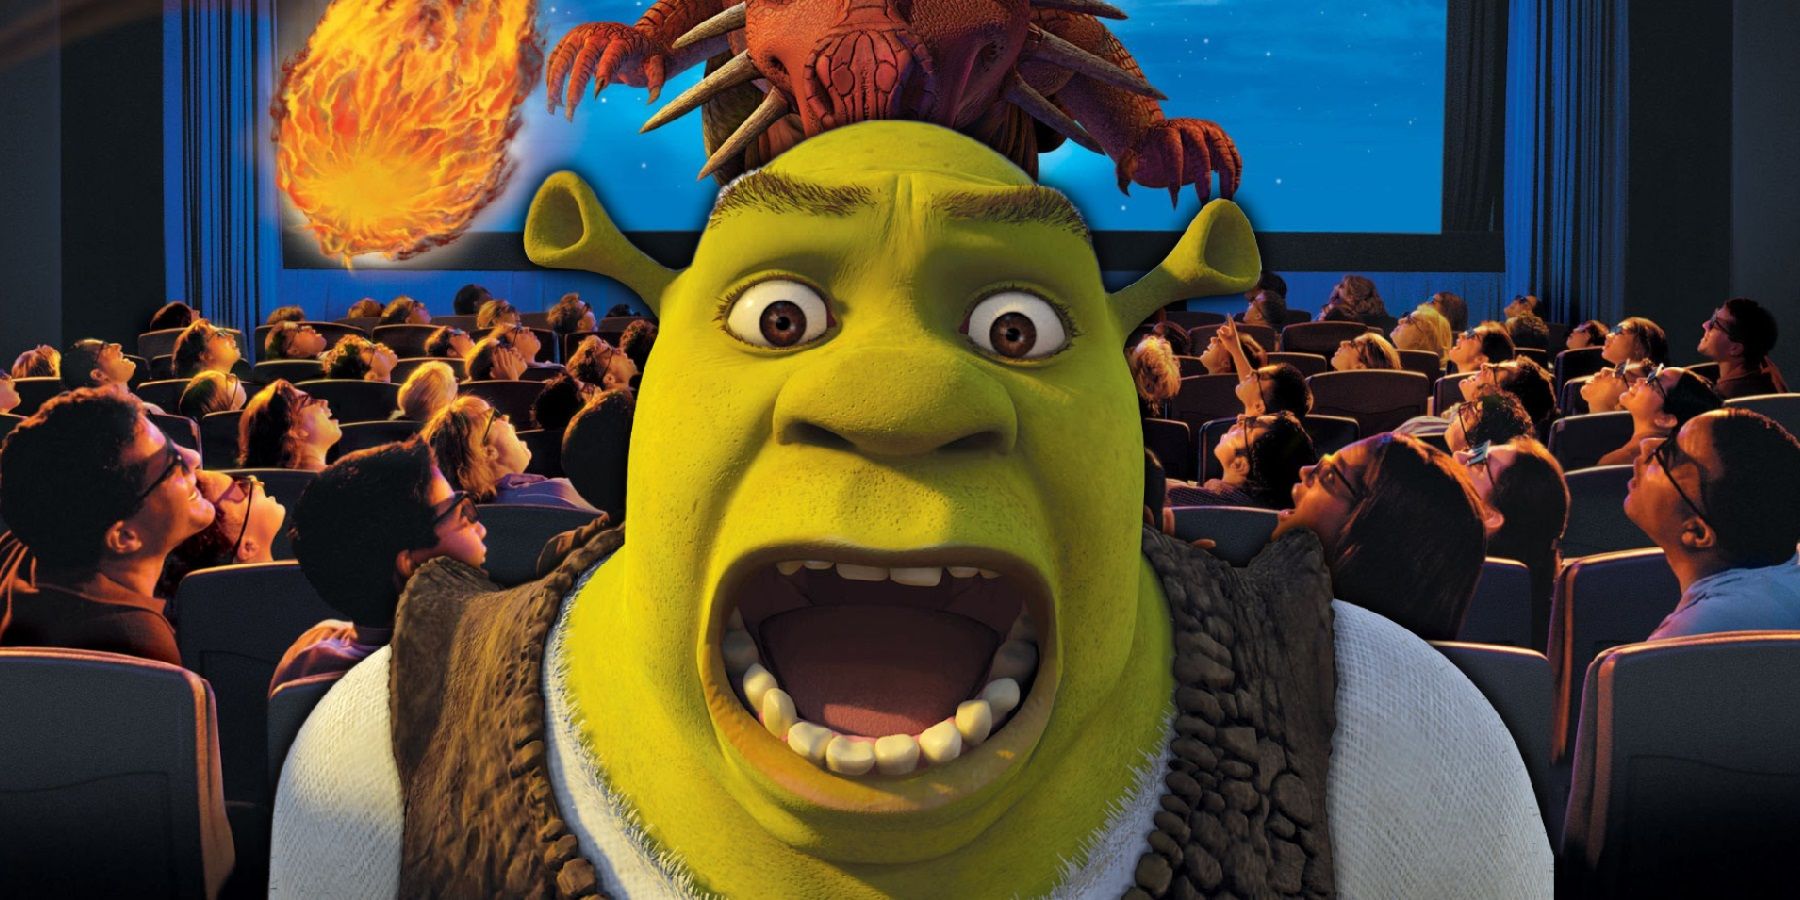 An upset Shrek in front of the poster for Universal Studios Shrek 4 D ride